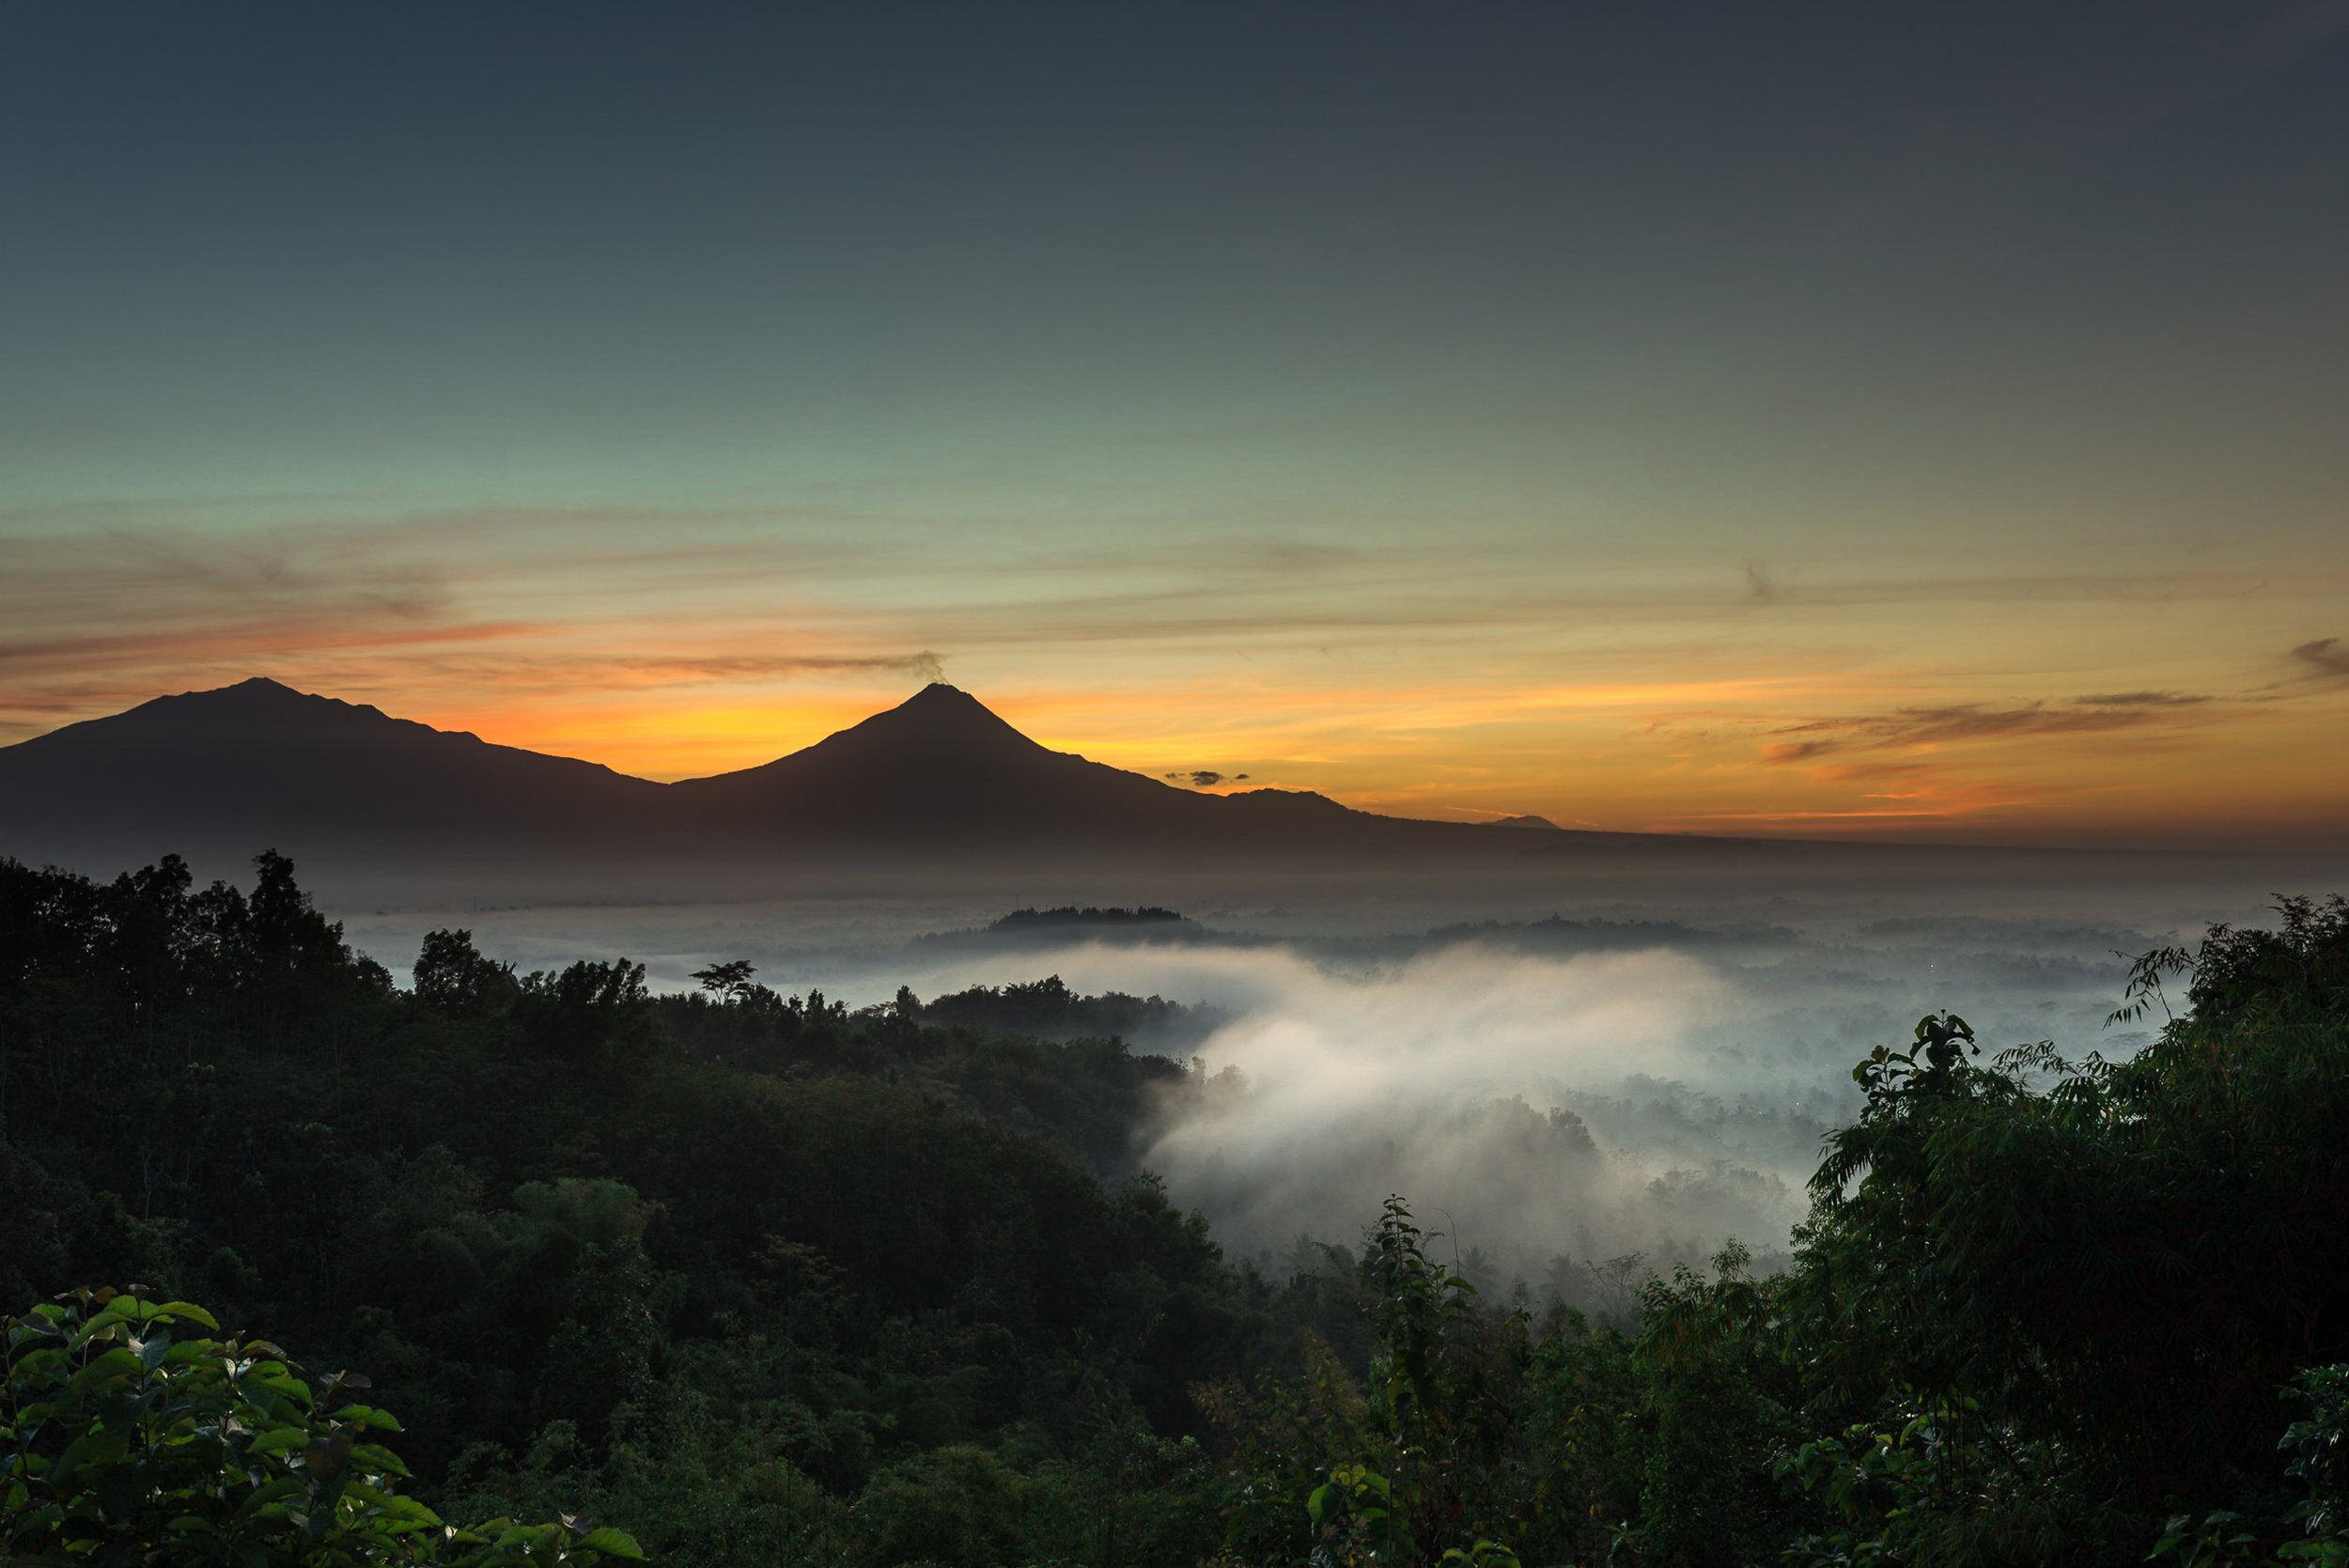   Merapi, Indonesia  